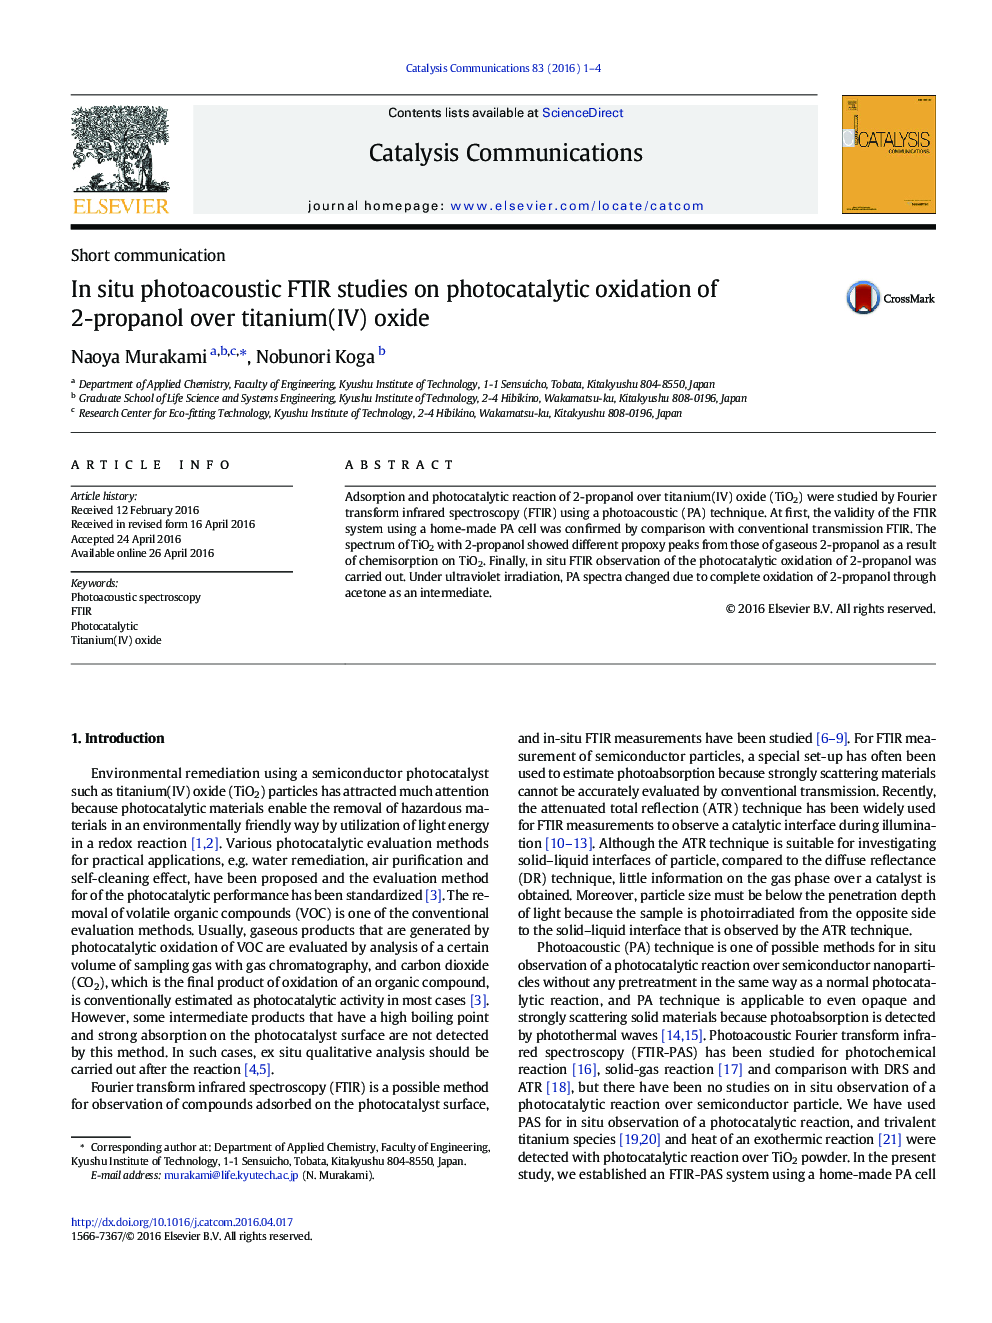 مطالعات FTIR فتوآکوستیک در محل درباره اکسیداسیون فتوکاتالیتی 2-پروپانول بر روی اکسید تیتانیوم (IV)